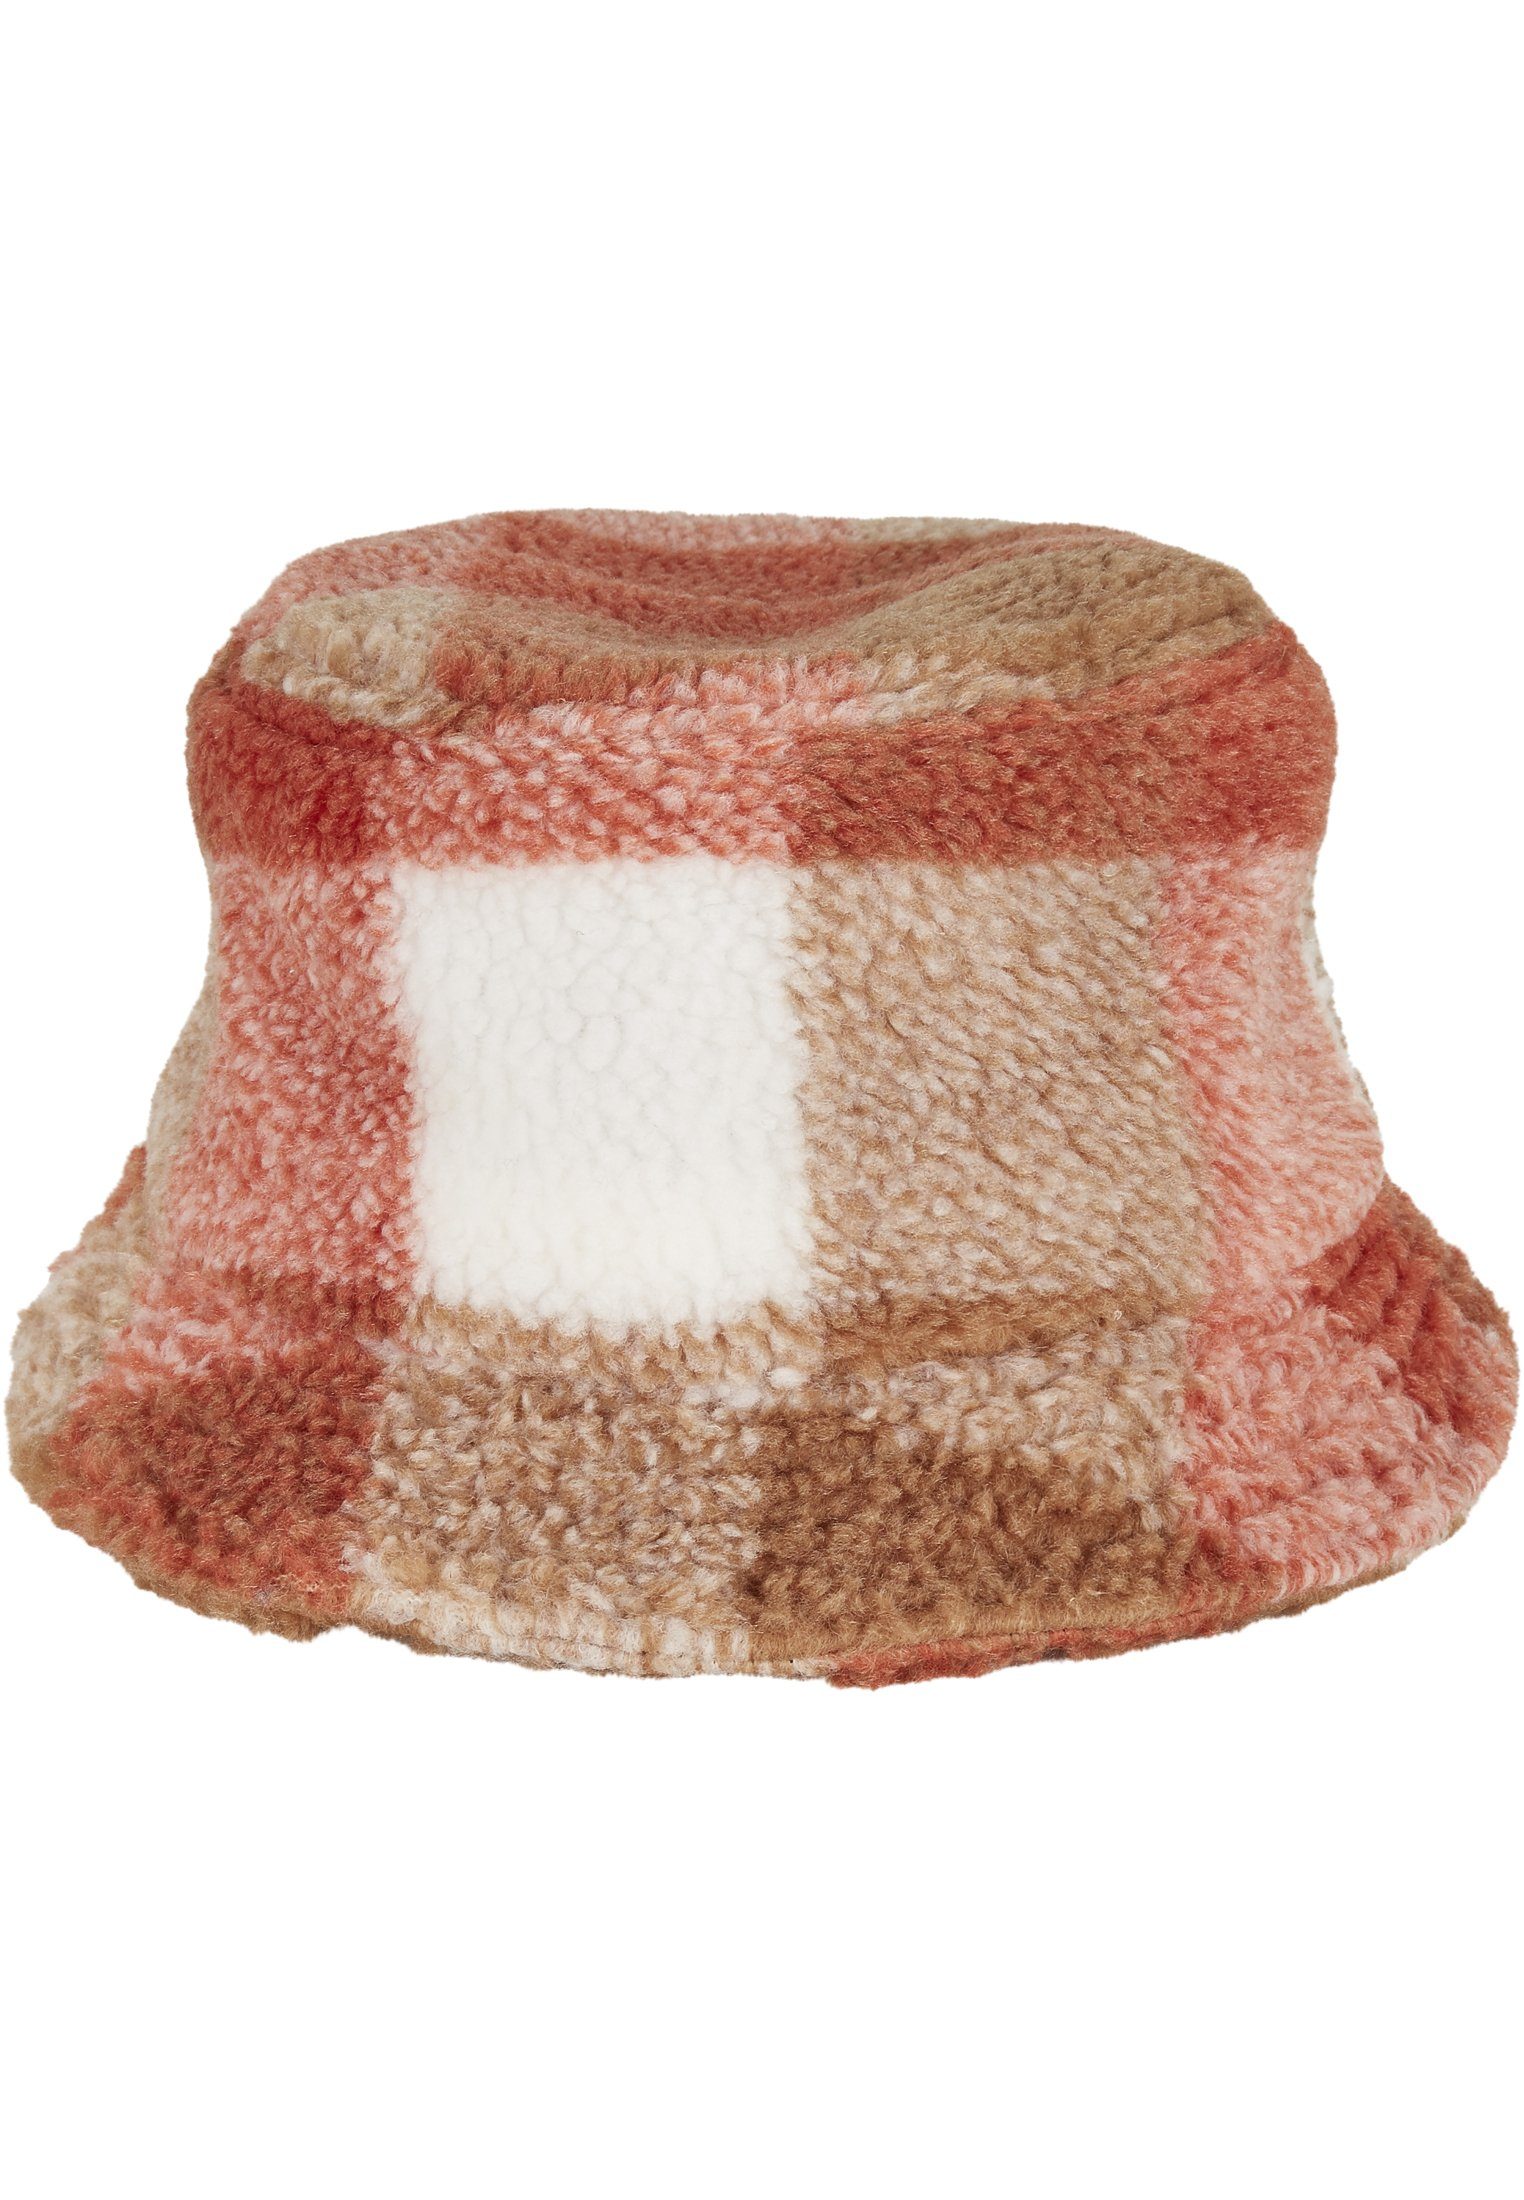 Bucket Cap Hat Check whitesand/toffee Sherpa Flexfit Bucket Flex Hat